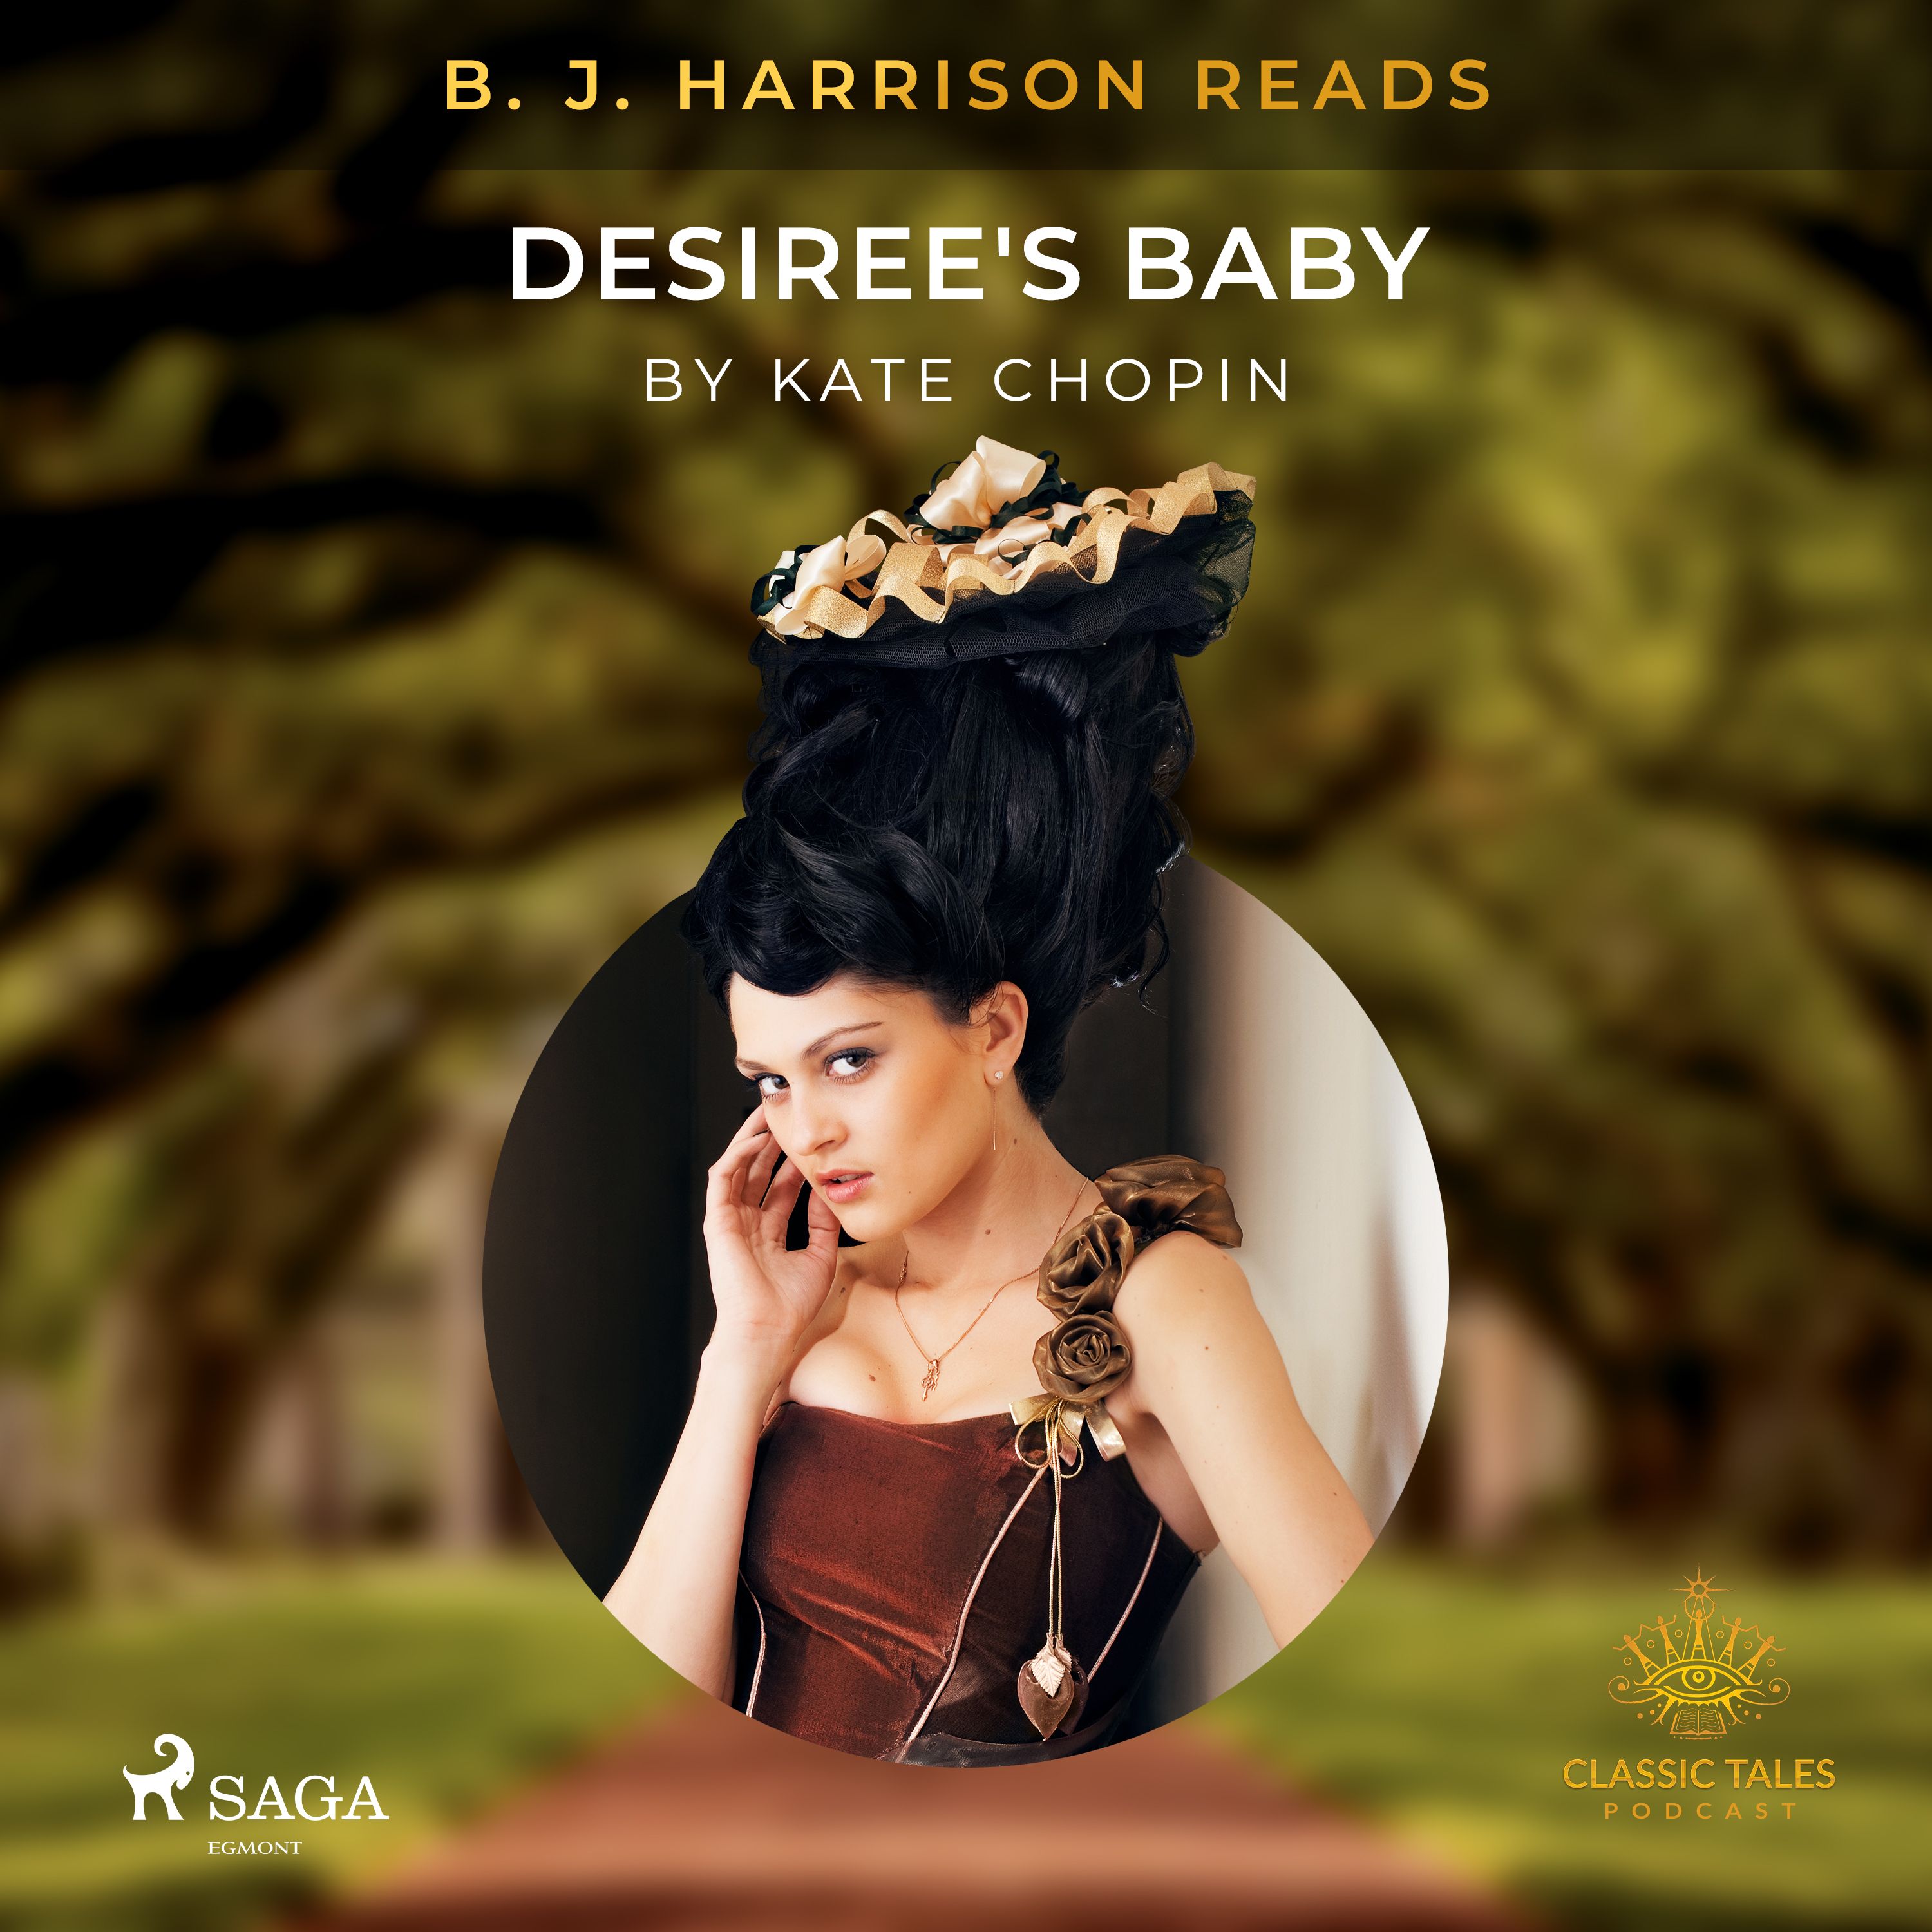 B. J. Harrison Reads Desiree's Baby, lydbog af Kate Chopin